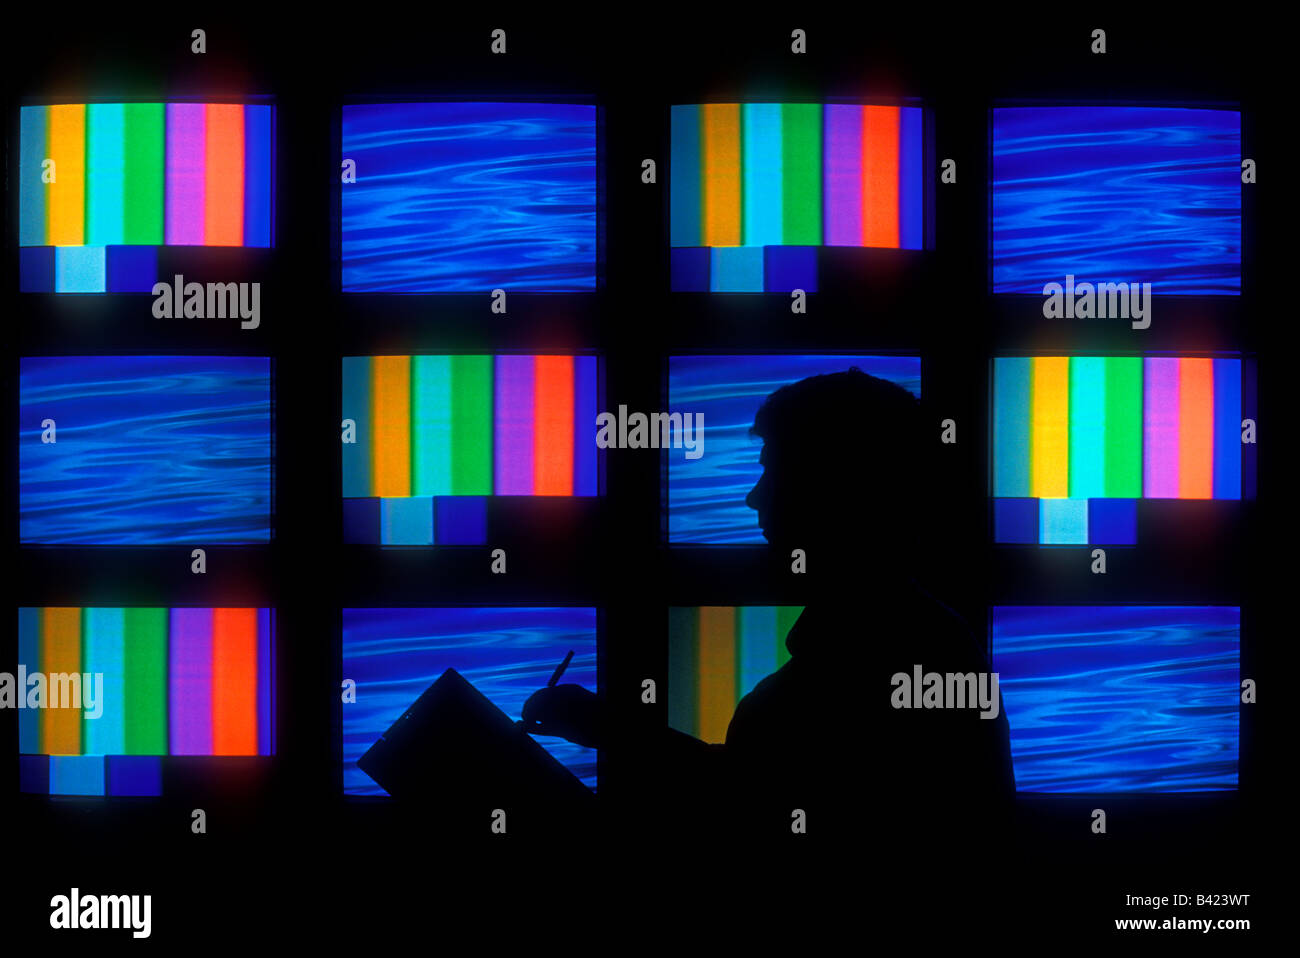 L'homme en face de moniteurs de télévision écrans vidéo Banque D'Images